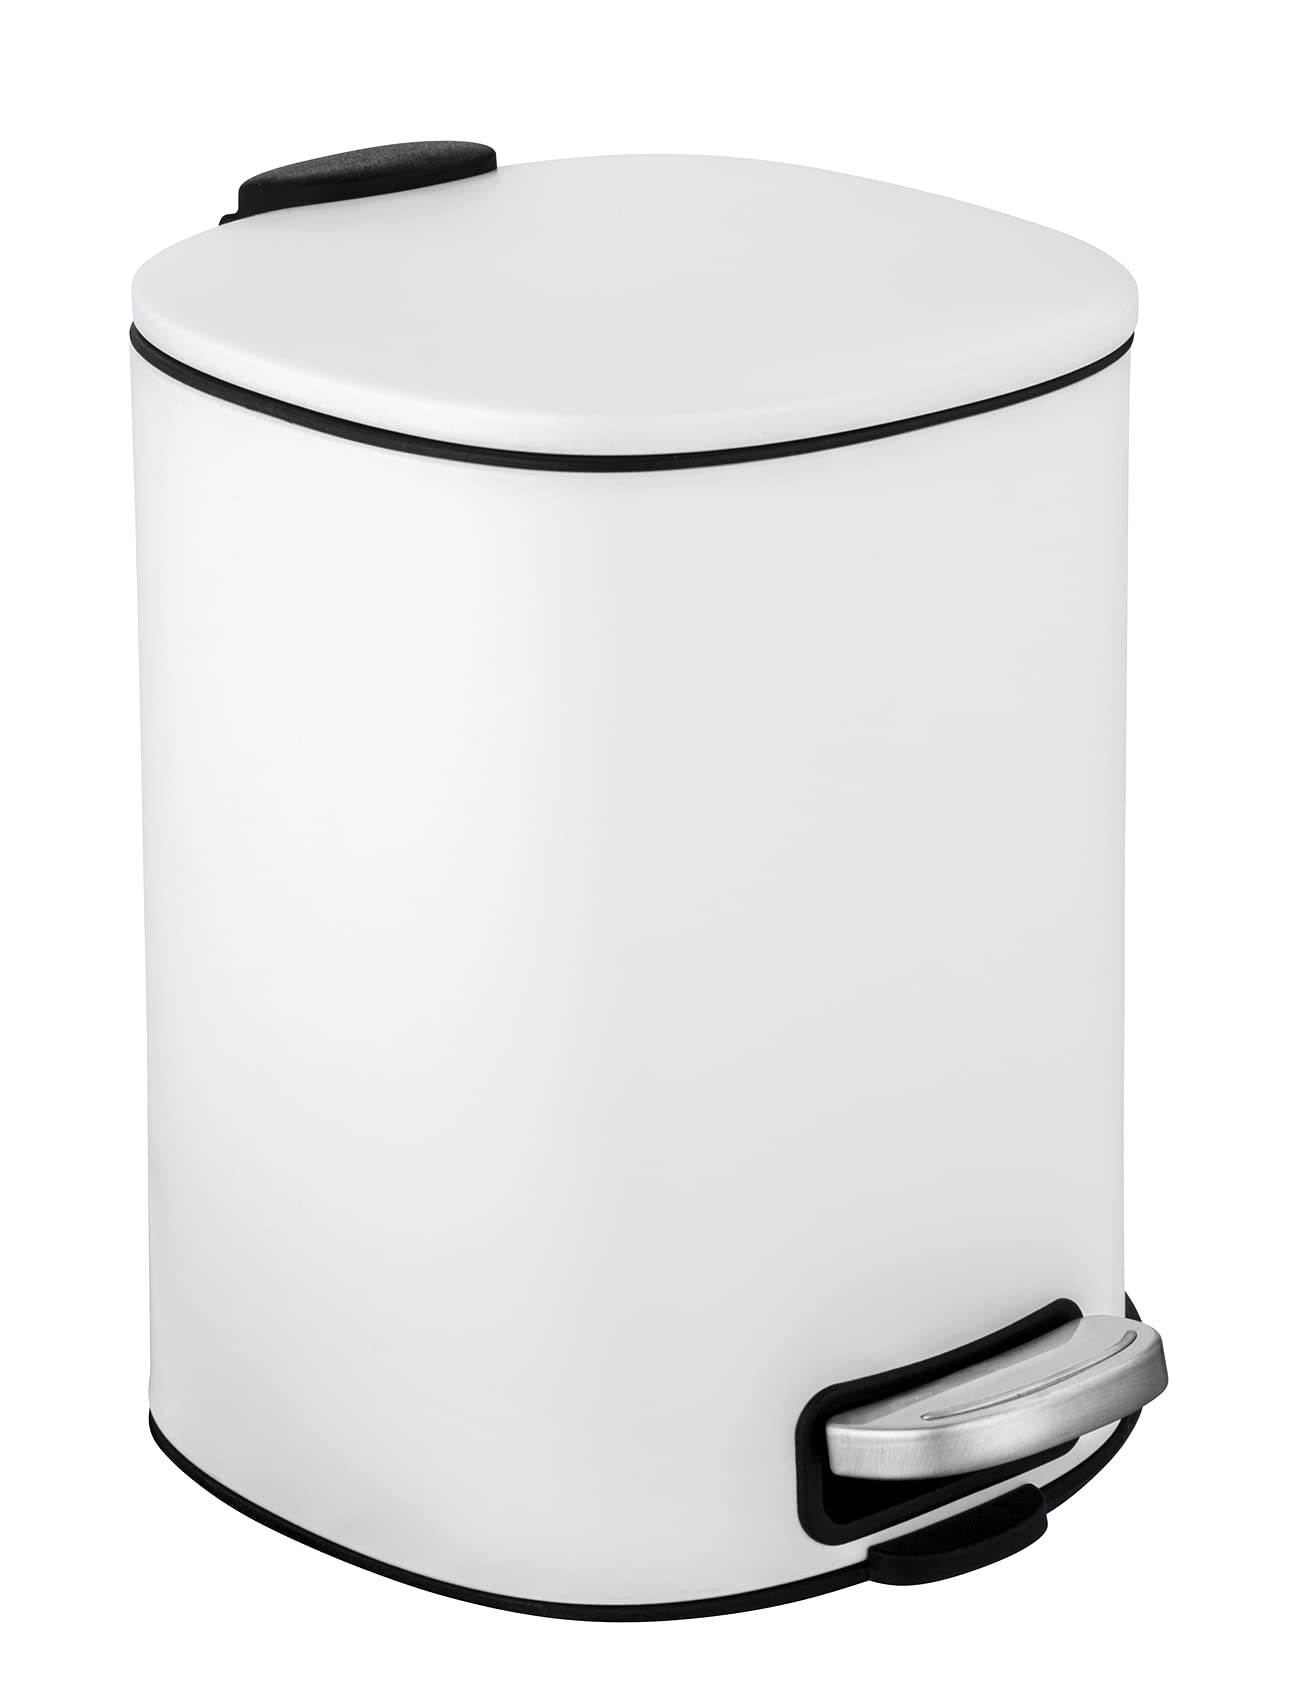 WENKO Kosmetik-Treteimer Alassio, Abfalleimer mit 5 Liter Volumen, hochwertiger Badezimmer-Mülleimer mit Easy-Close Absenkautomatik, aus lackiertem Stahl, 20,5 x 27 x 24,5 cm, Weiß